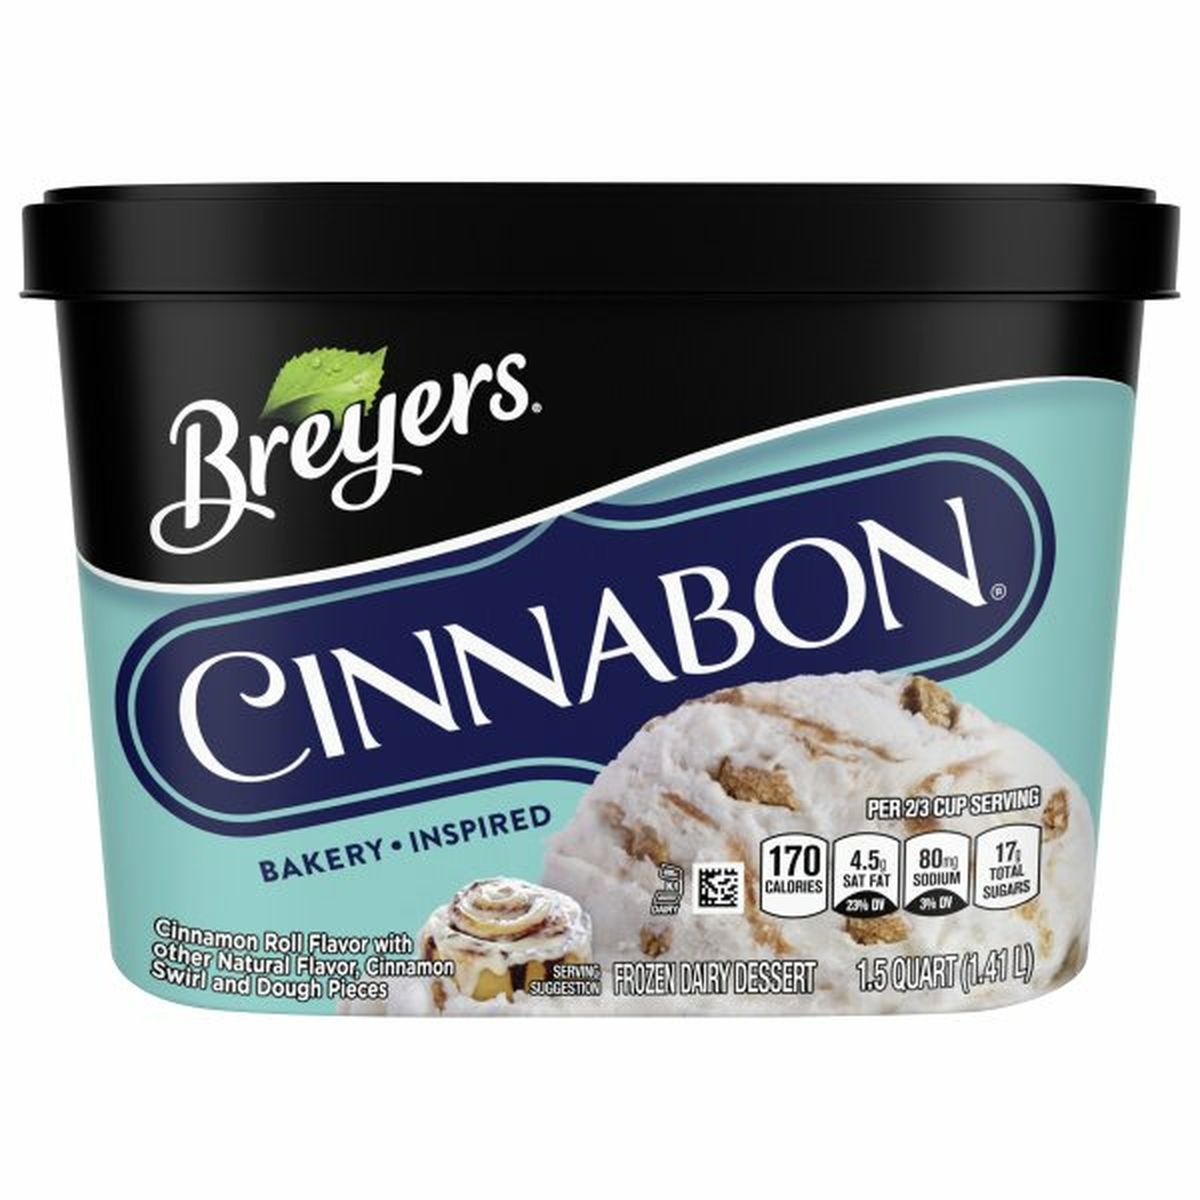 Calories in Breyers Cinnabon Frozen Dairy Dessert